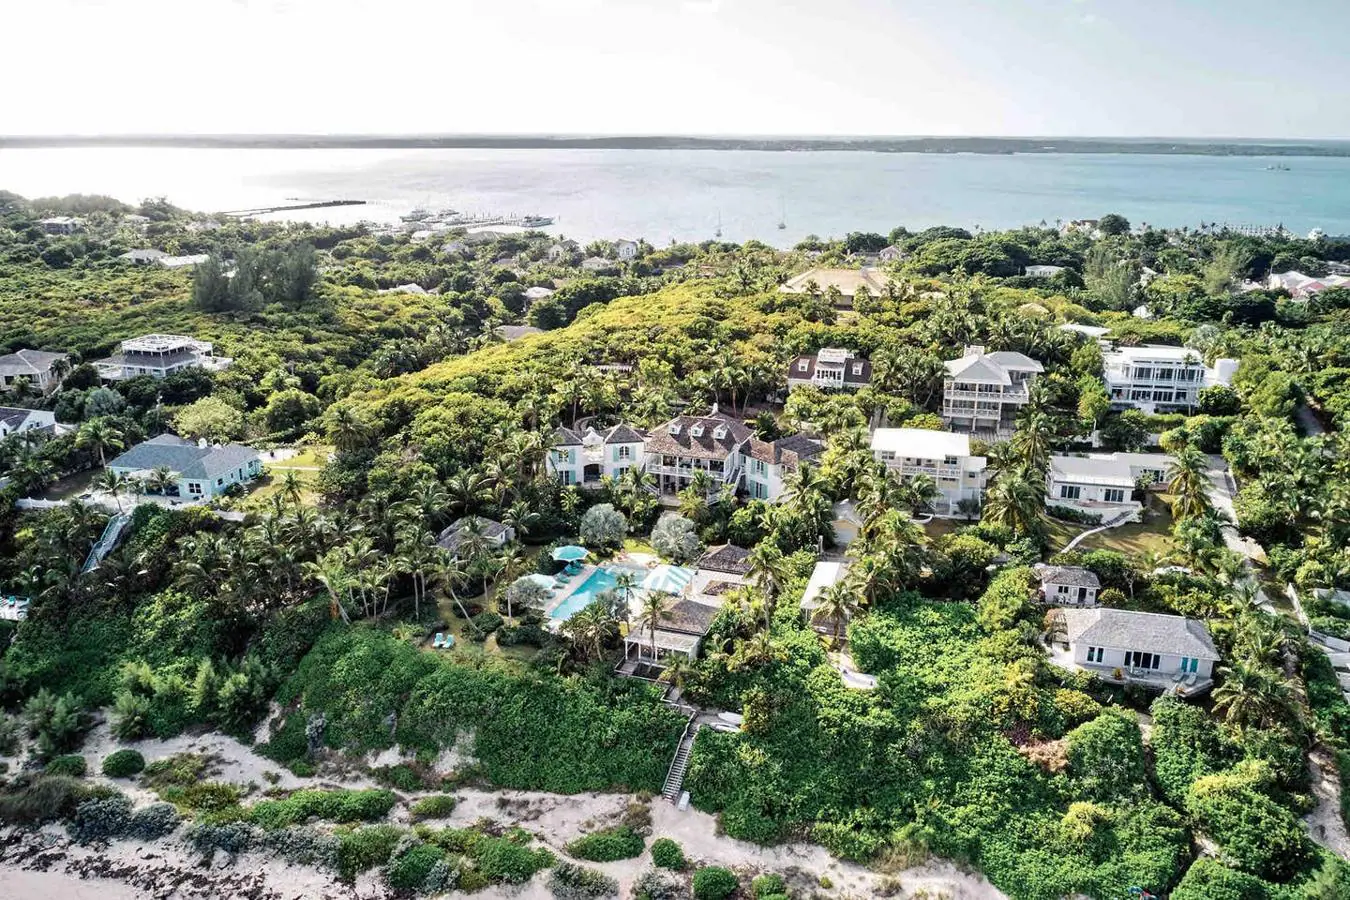 Playa privada y naturaleza- La lujosa mansión de Kylie Jenner en Bahamas. "Villa Rosalita", es una de las casas más ostentosas de la isla, situada en el sureste, posee unas vistas privilegiadas del amanecer  y ofrece la privacidad que buscan las celebrities gracias a la vasta naturaleza que la rodea. Posee además acceso directo a la playa privada y una residencia de invitados.